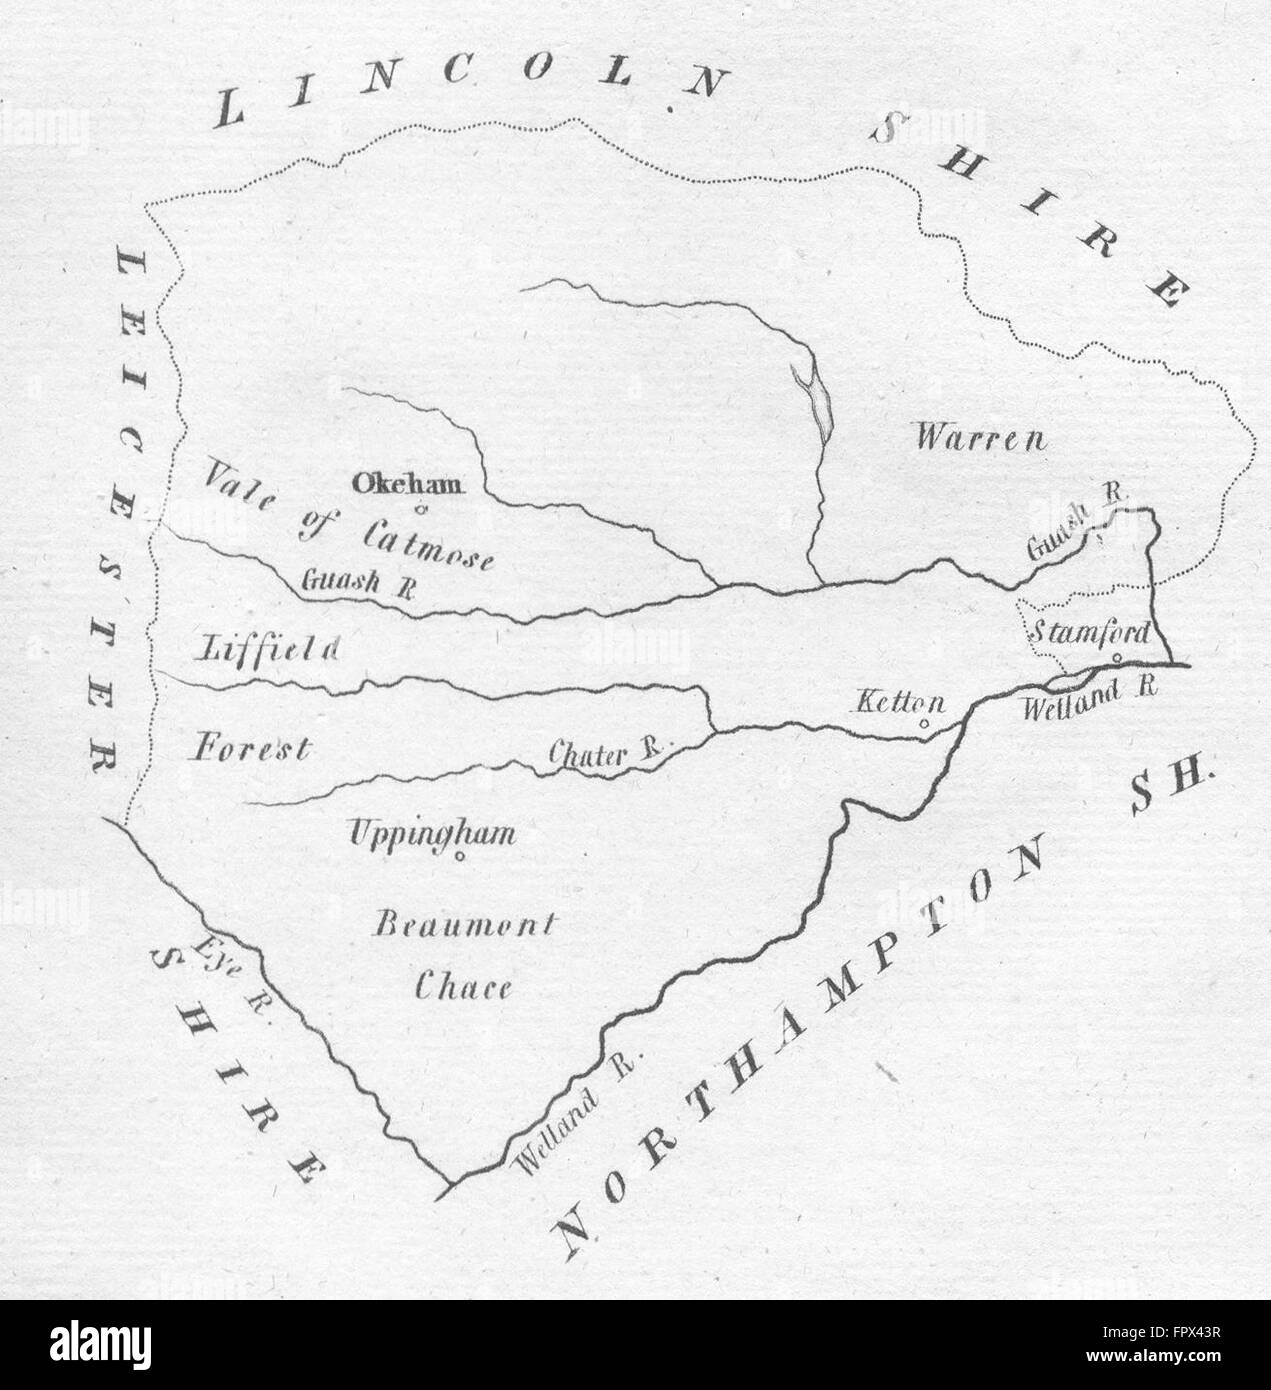 RUTLAND: Rutlandshire: AIKIN: (5th Edition), 1803 antique map Stock Photo